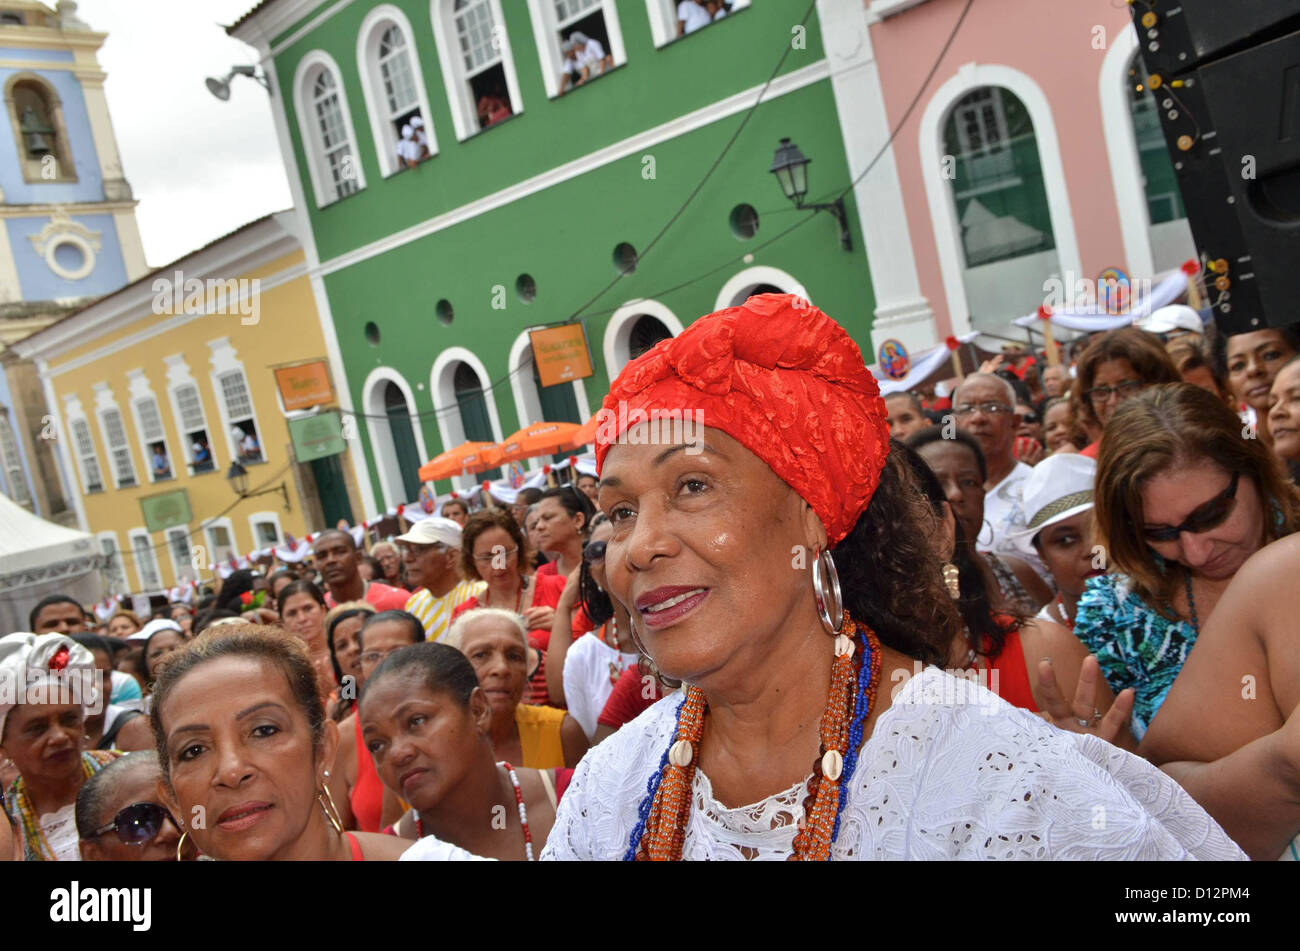 Anhänger nehmen Teil in einer Prozession, die Heilige Barbara, als Teil eines Zyklus der religiösen Feste in Salvador, Bahia Staat im Nordosten Brasiliens, am 4. Dezember 2012 zu feiern. Foto: ERIK SALLES/BAPRESS Stockfoto